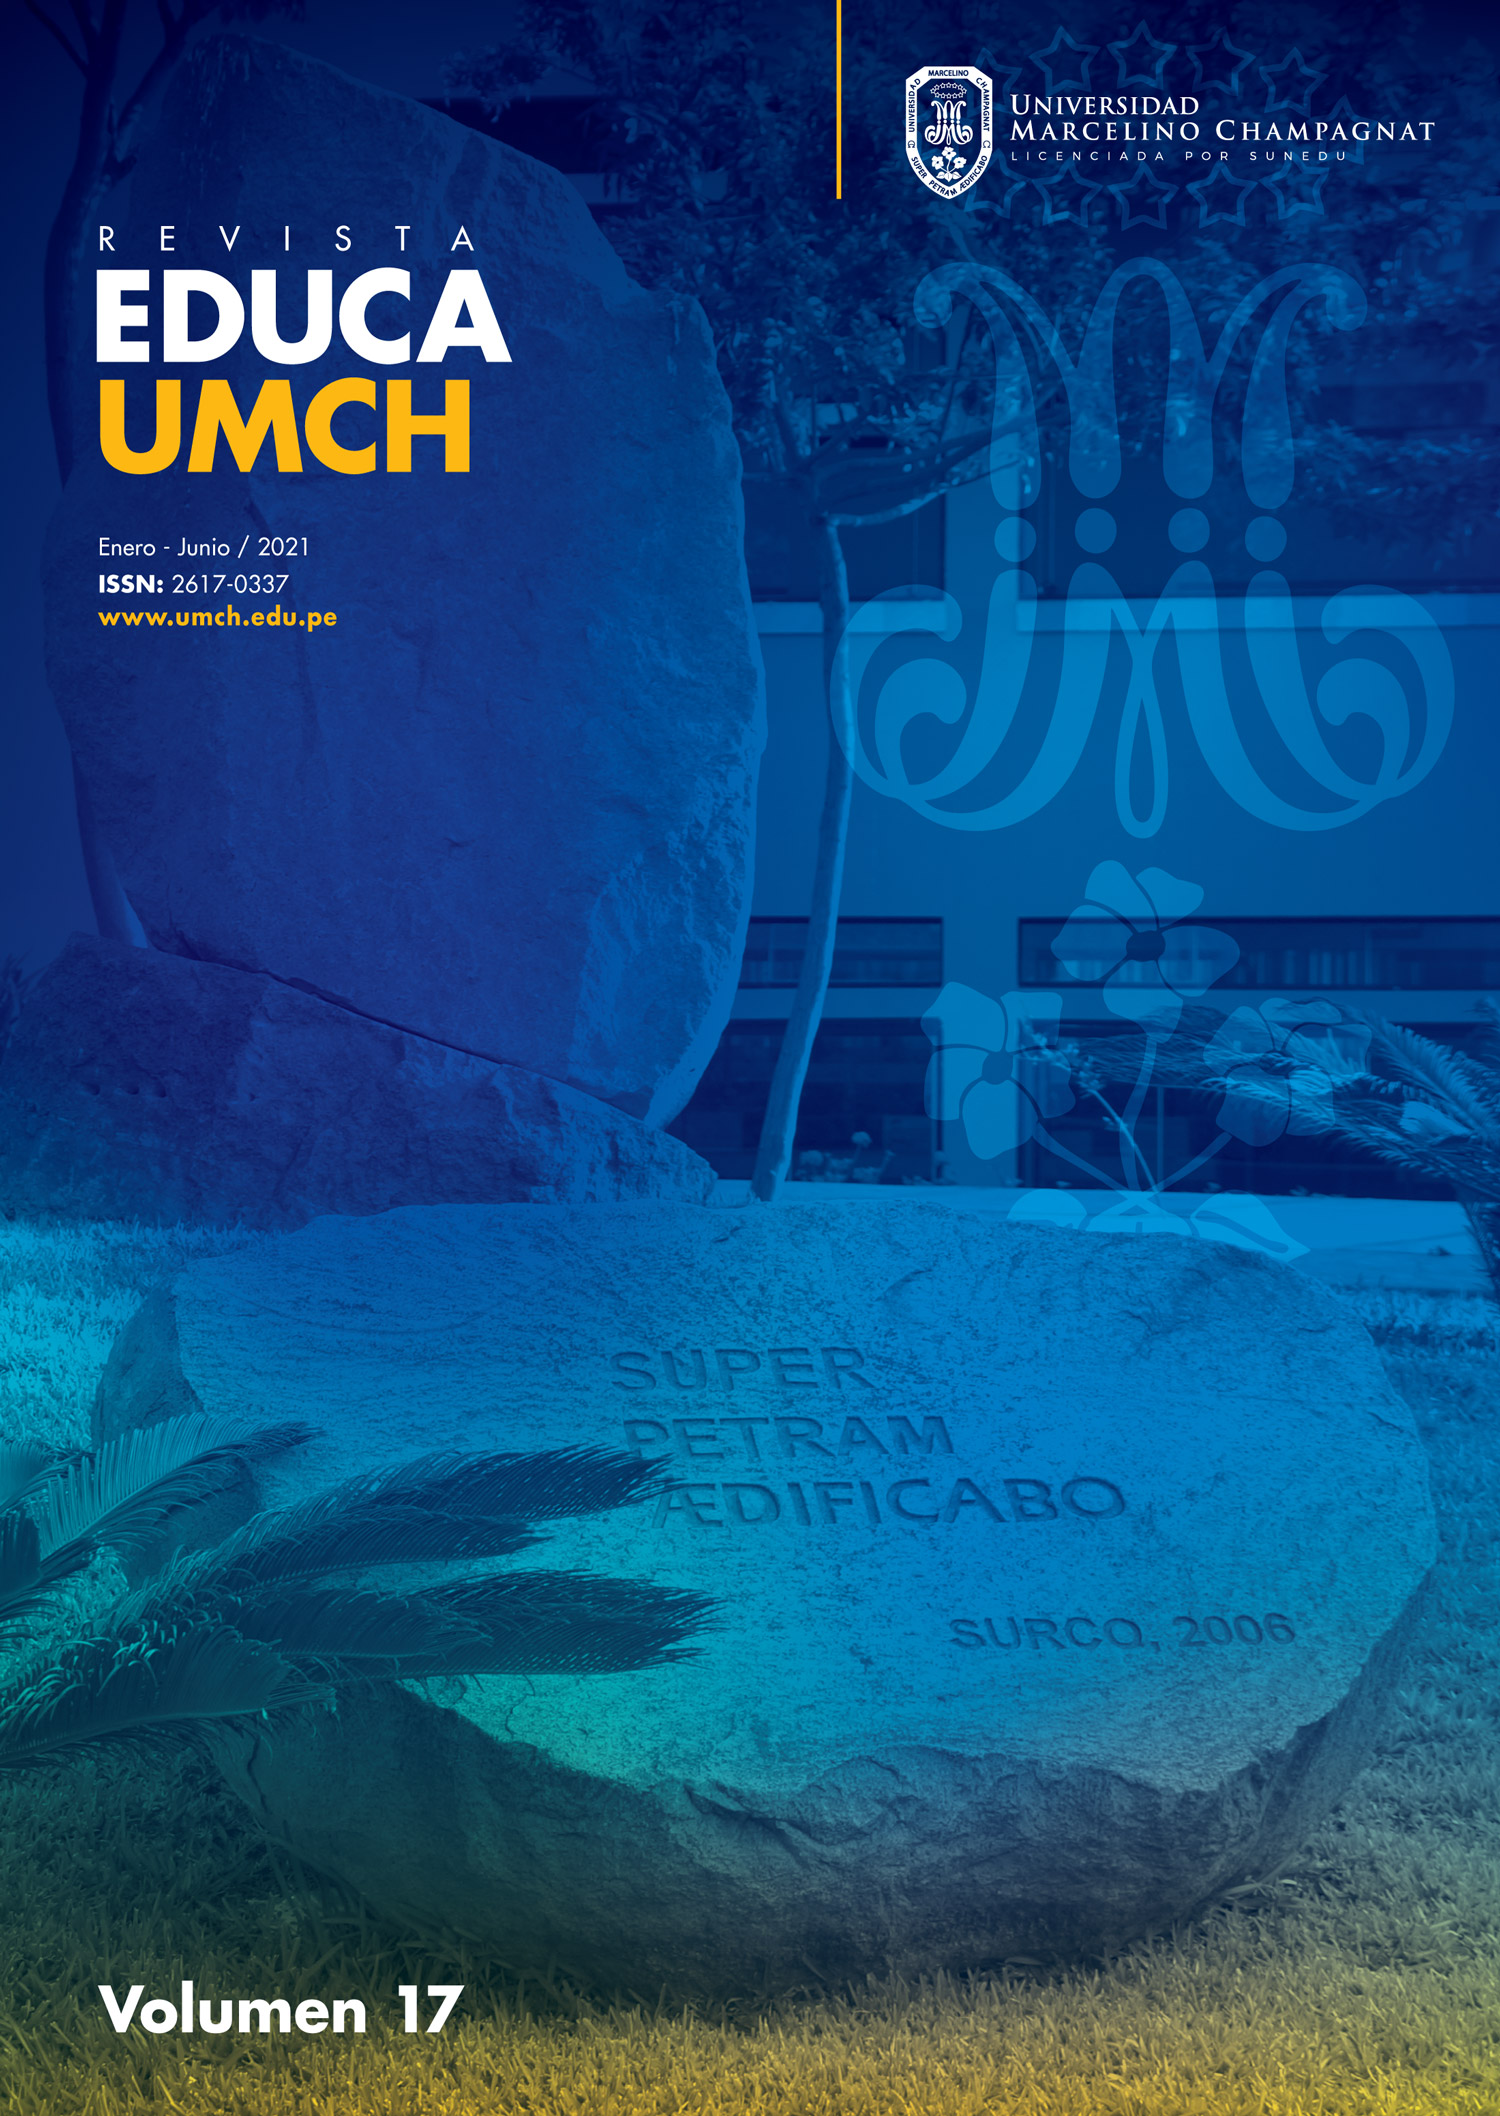 					Ver Núm. 17 (2021): Revista Educa - UMCH N°17 2021 (enero - junio)
				